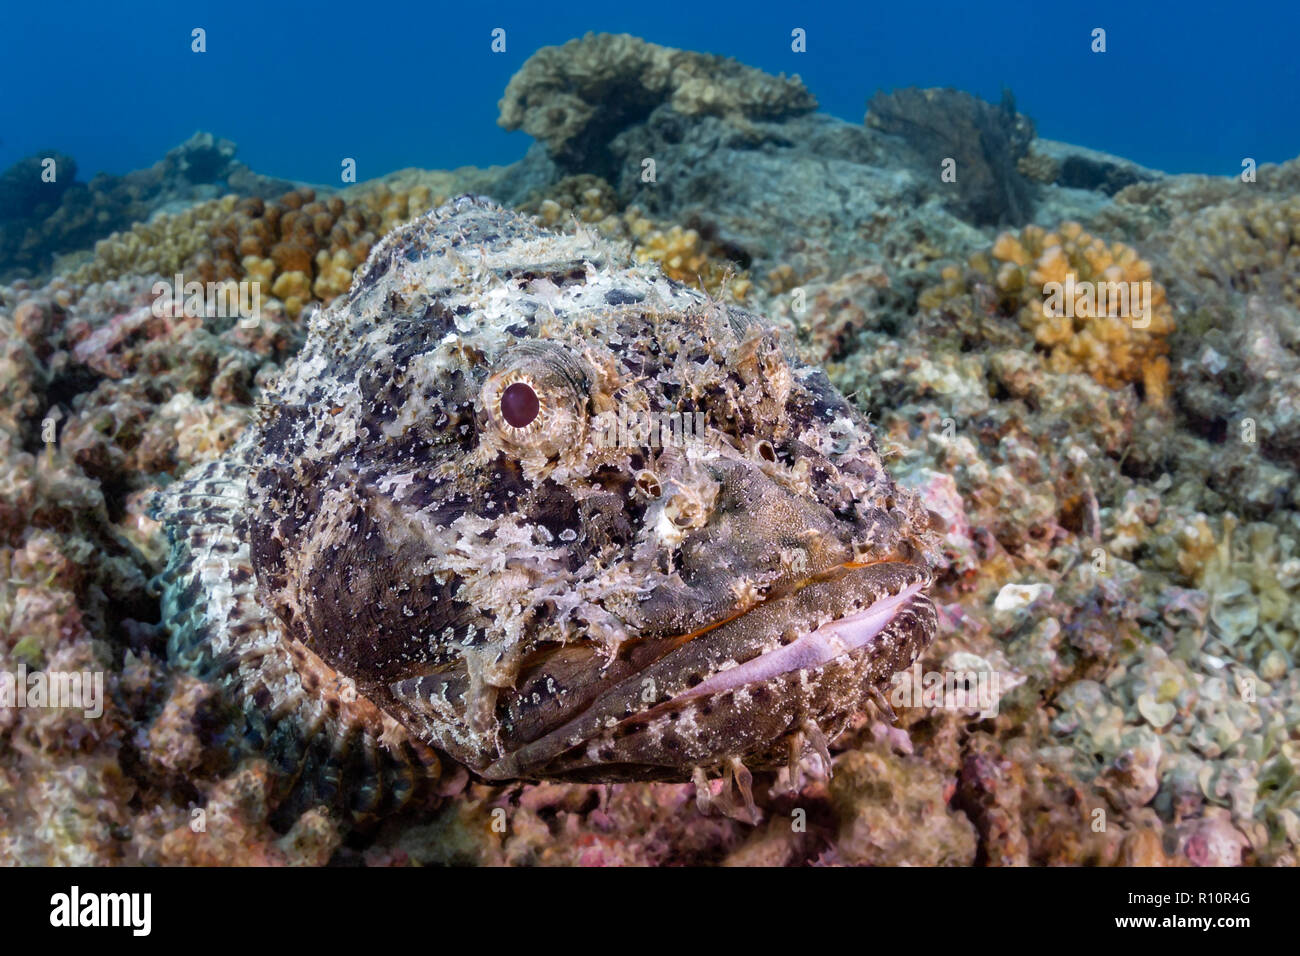 Scorpionfish se fond dans son environnement à Swanee Reef, La Paz, Baja California Sur, Mexique (Scorpaenidae) Banque D'Images